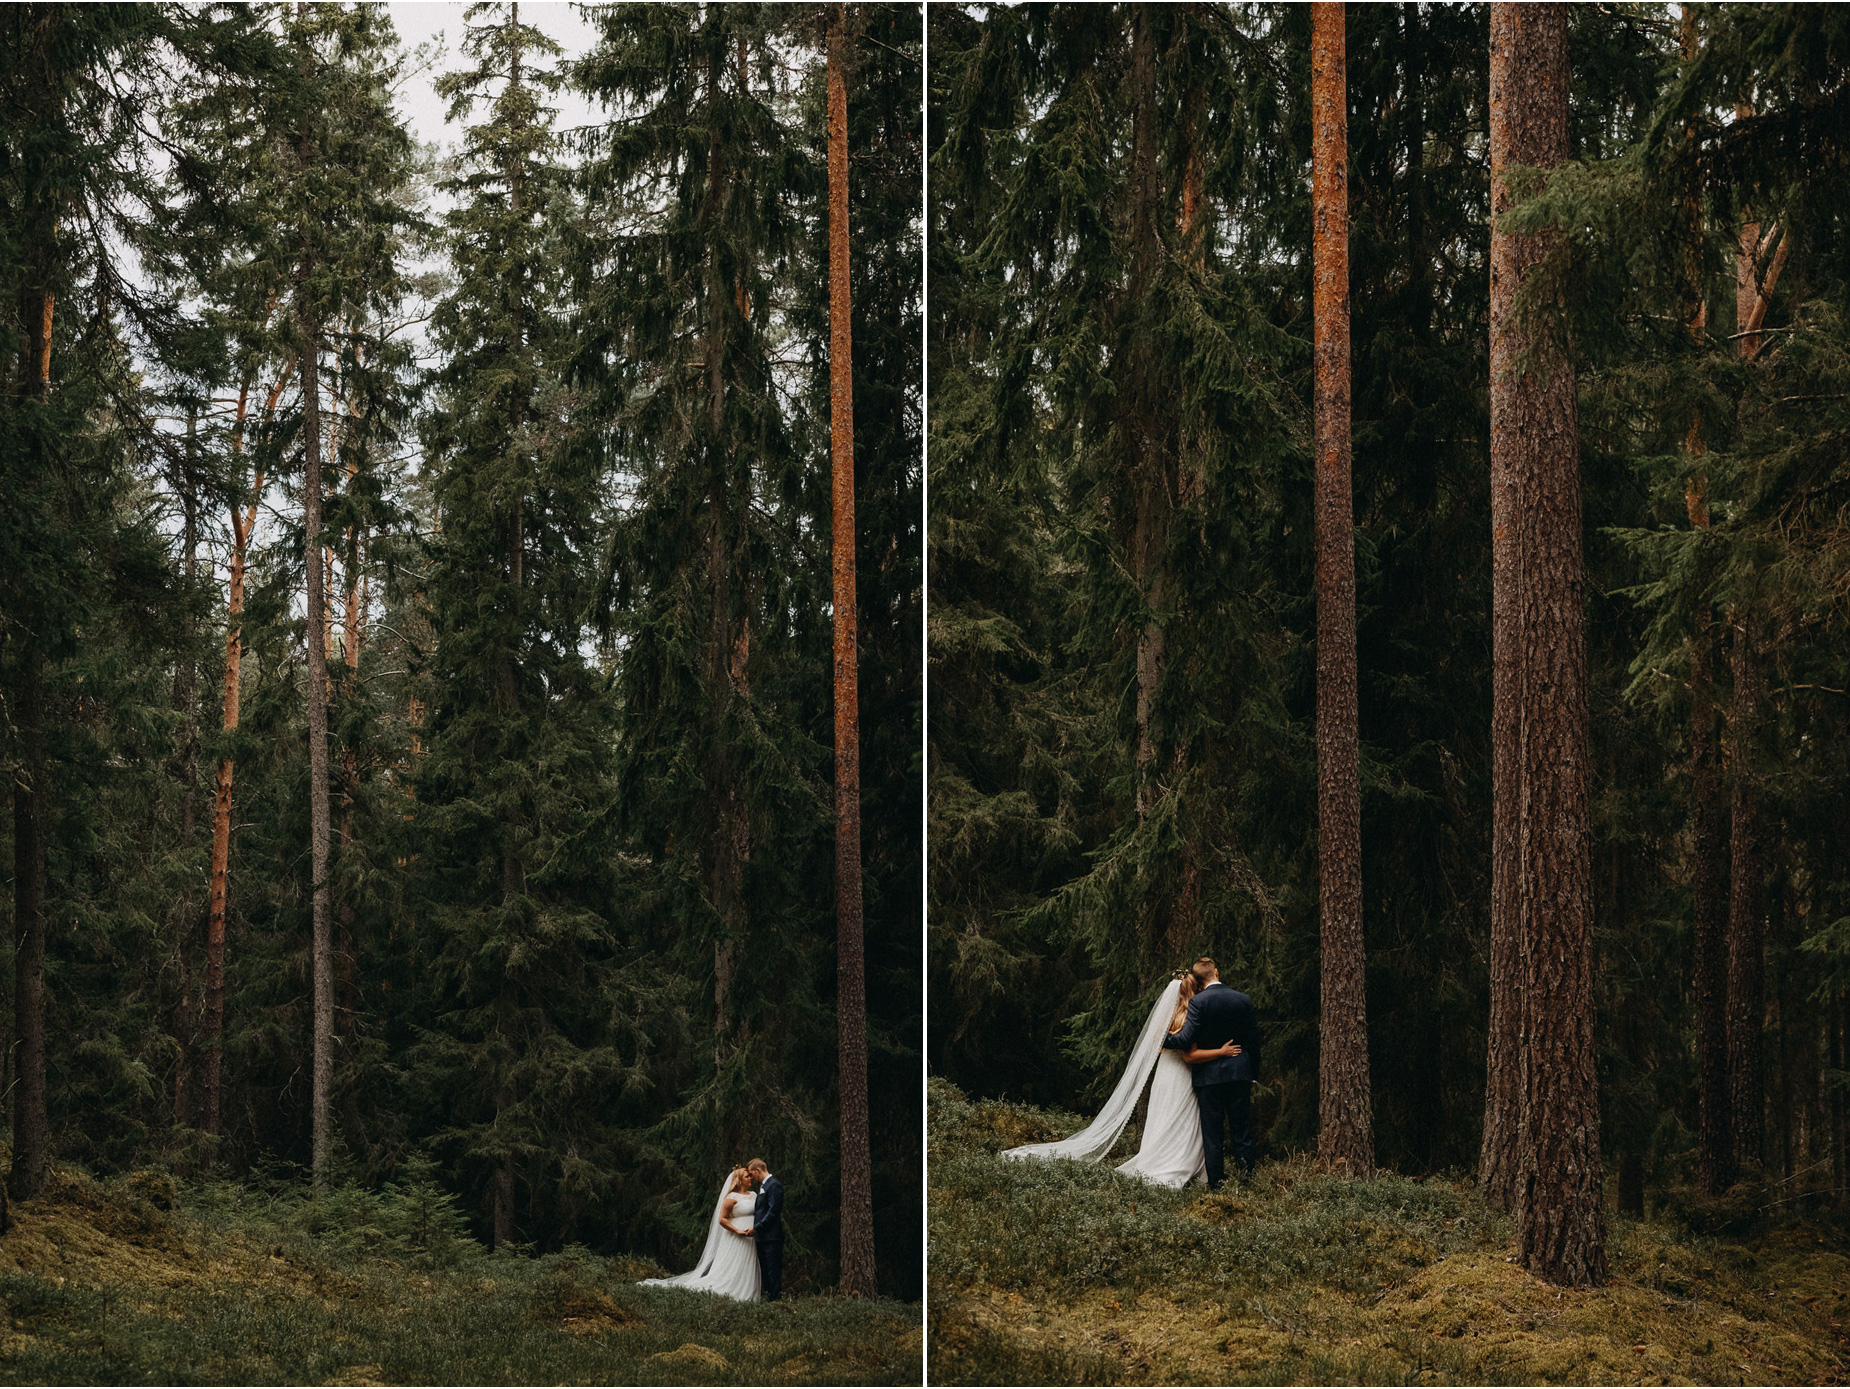 Bröllopsfotografering i småländsk gammelskog - wedding photography in the forest